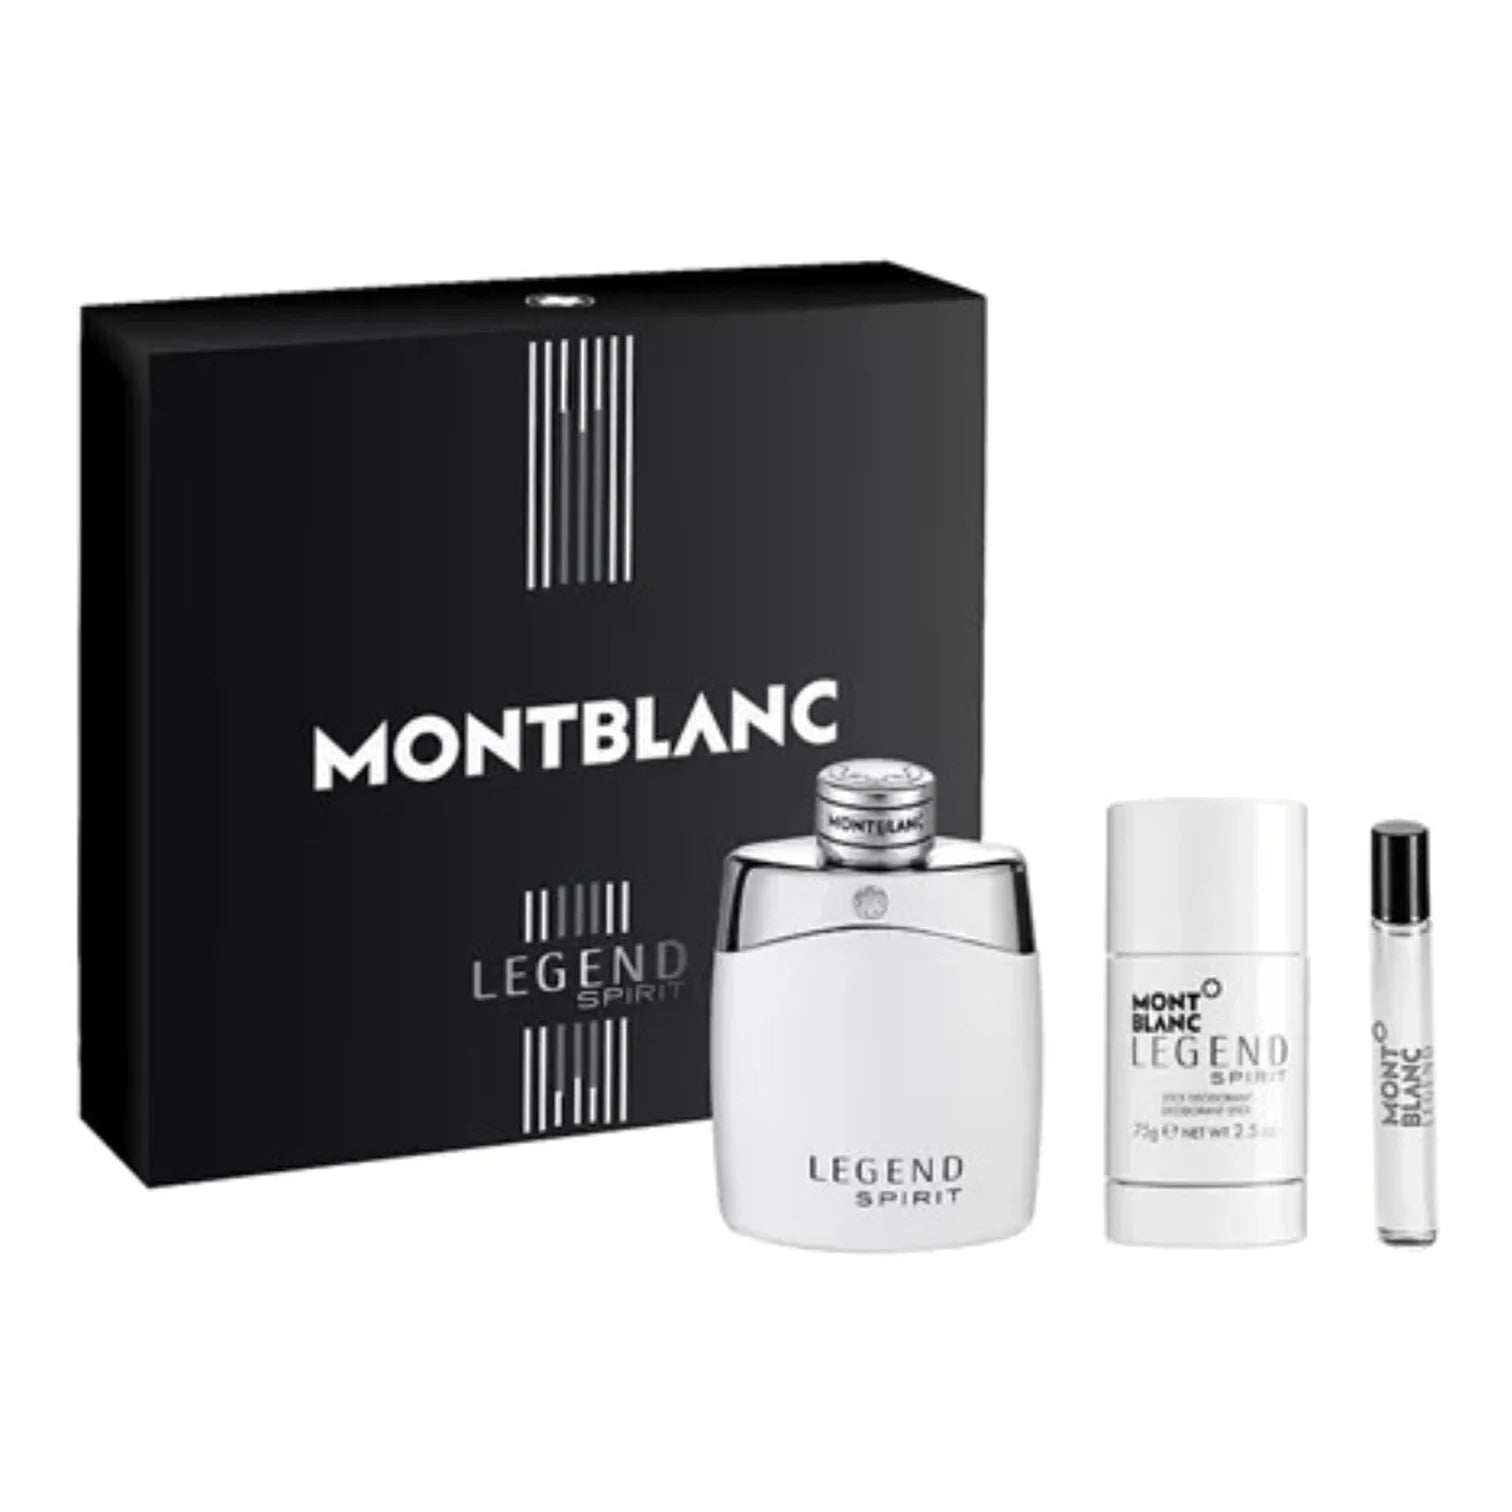 Mont Blanc Montblanc Legend Spirit Eau de Toilette Spray 1.7 oz